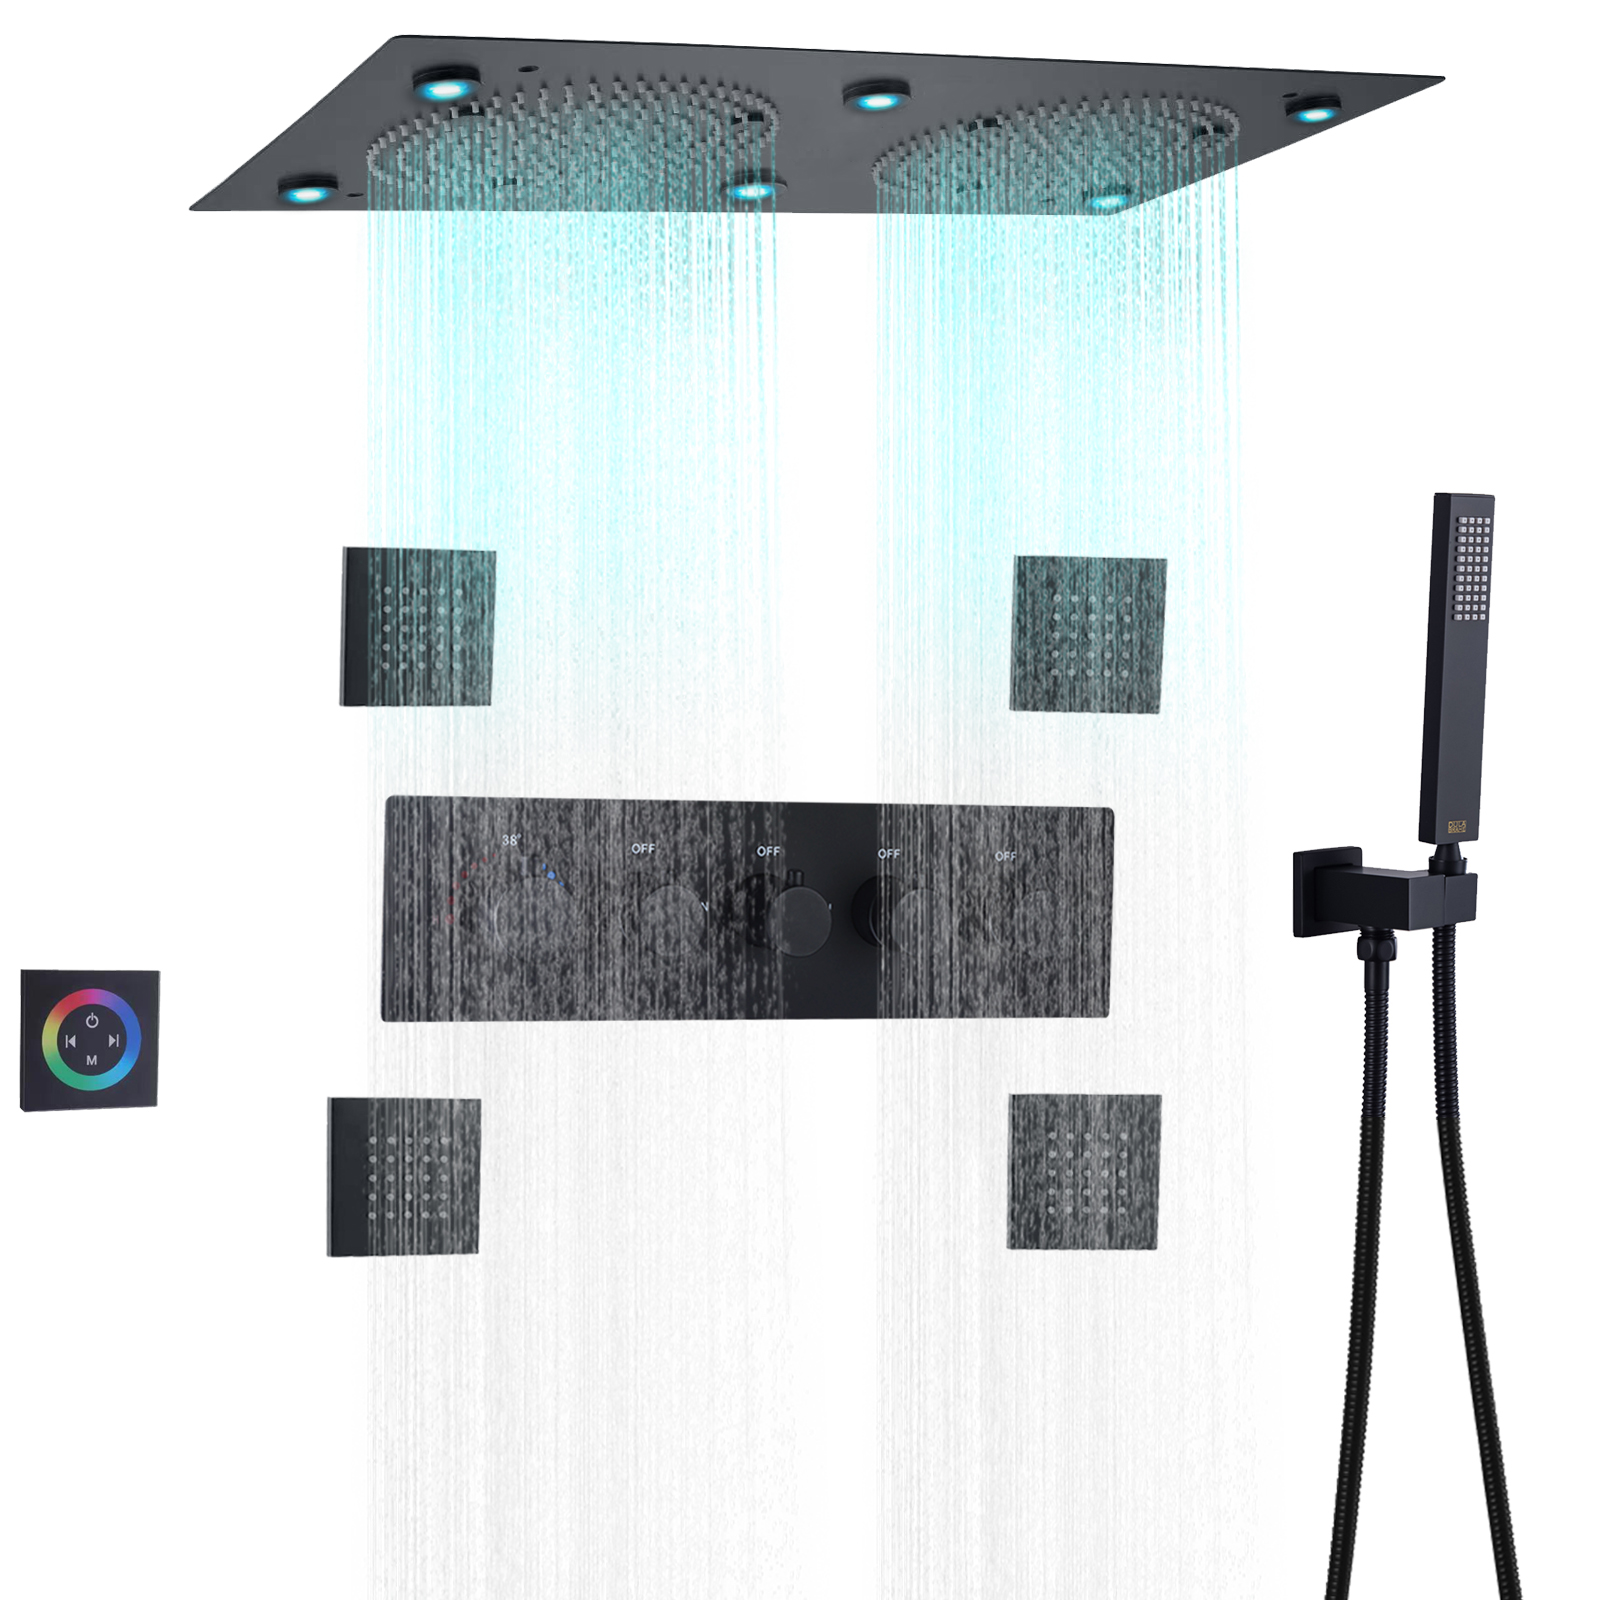 Preto fosco top-end embutido teto banho misturador de chuveiro 7 cores led termostática chuvas massagem douche